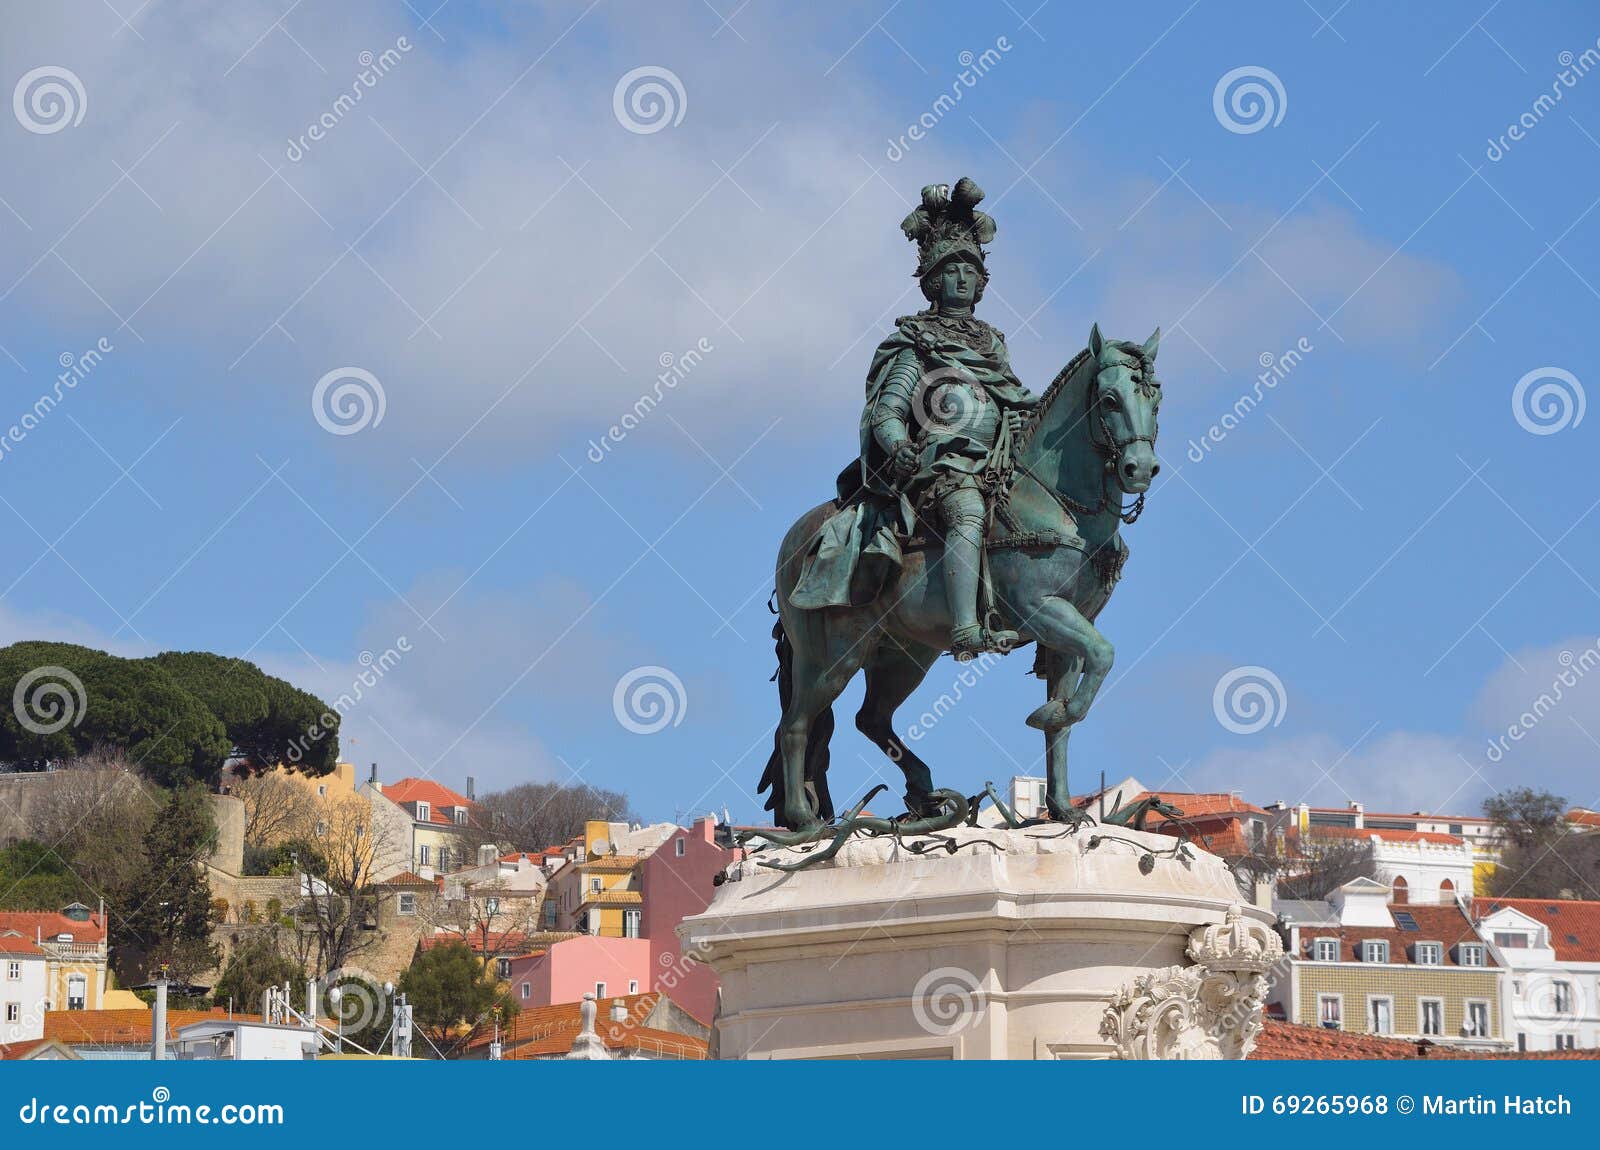 statue of king jose in praca do comercio lisbon